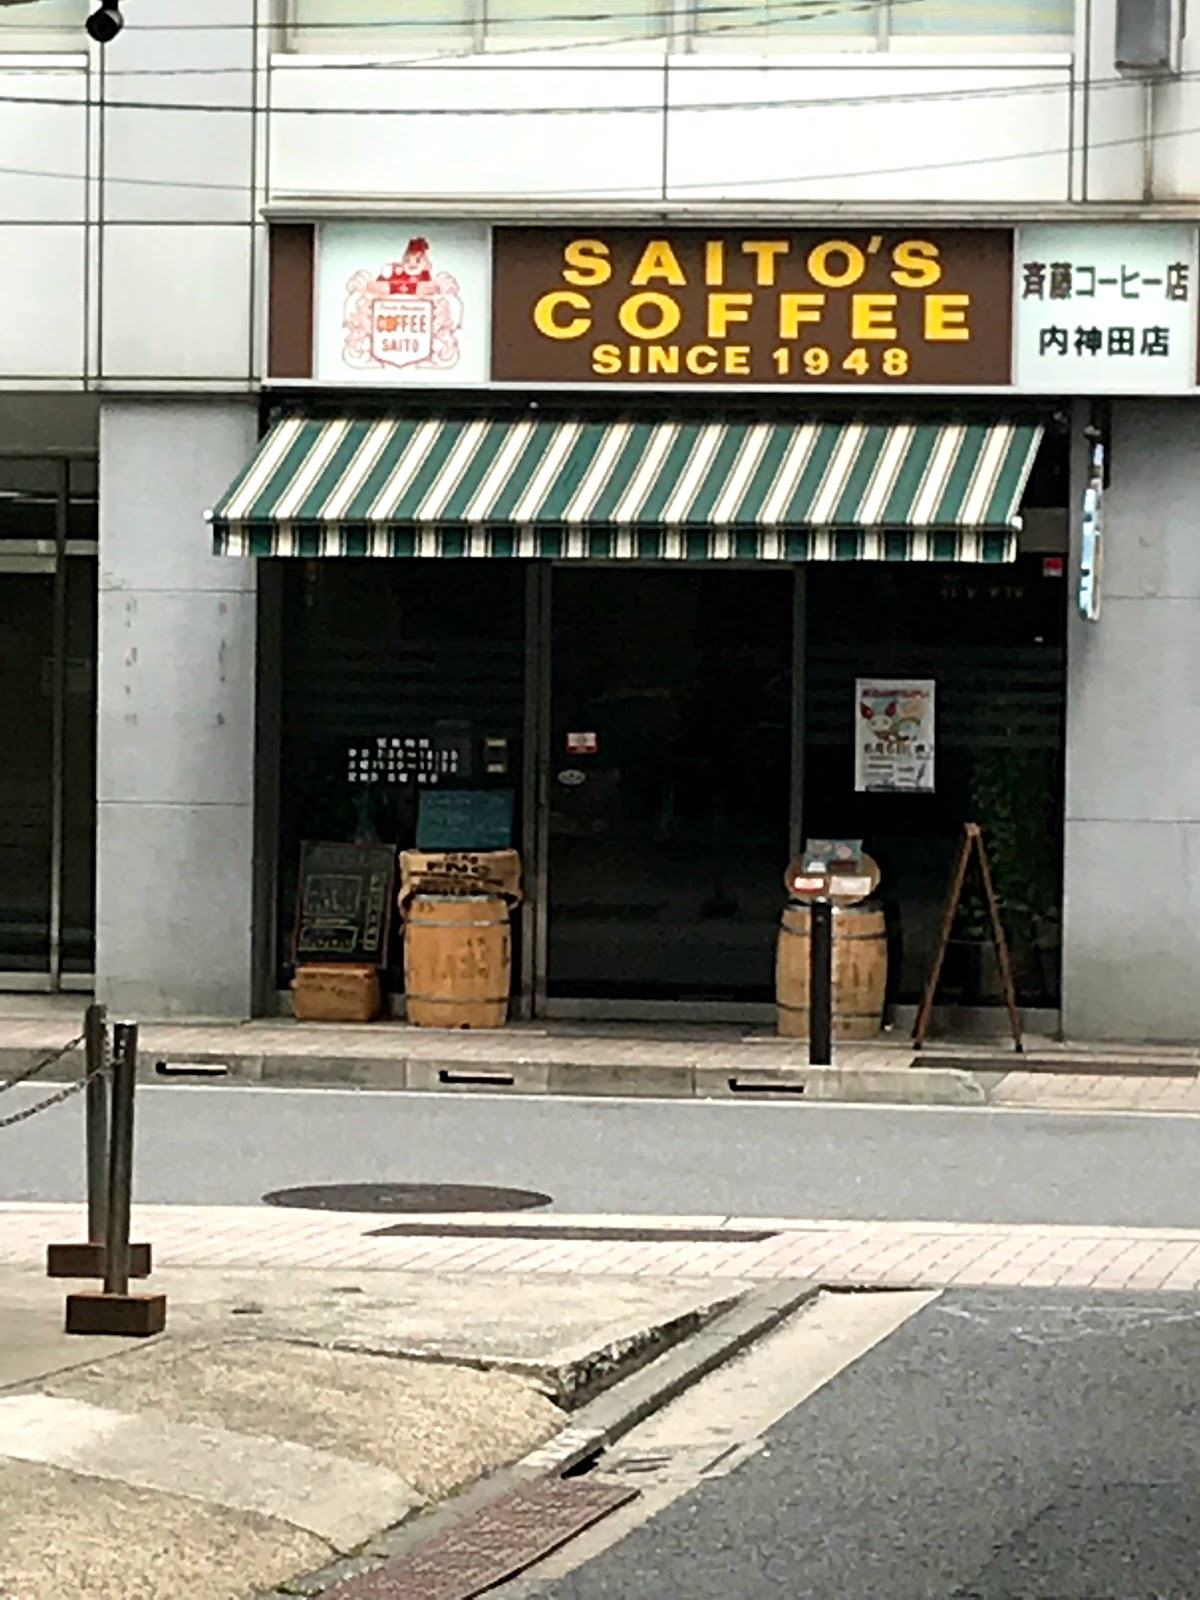 斎藤コーヒー店 内神田店の写真